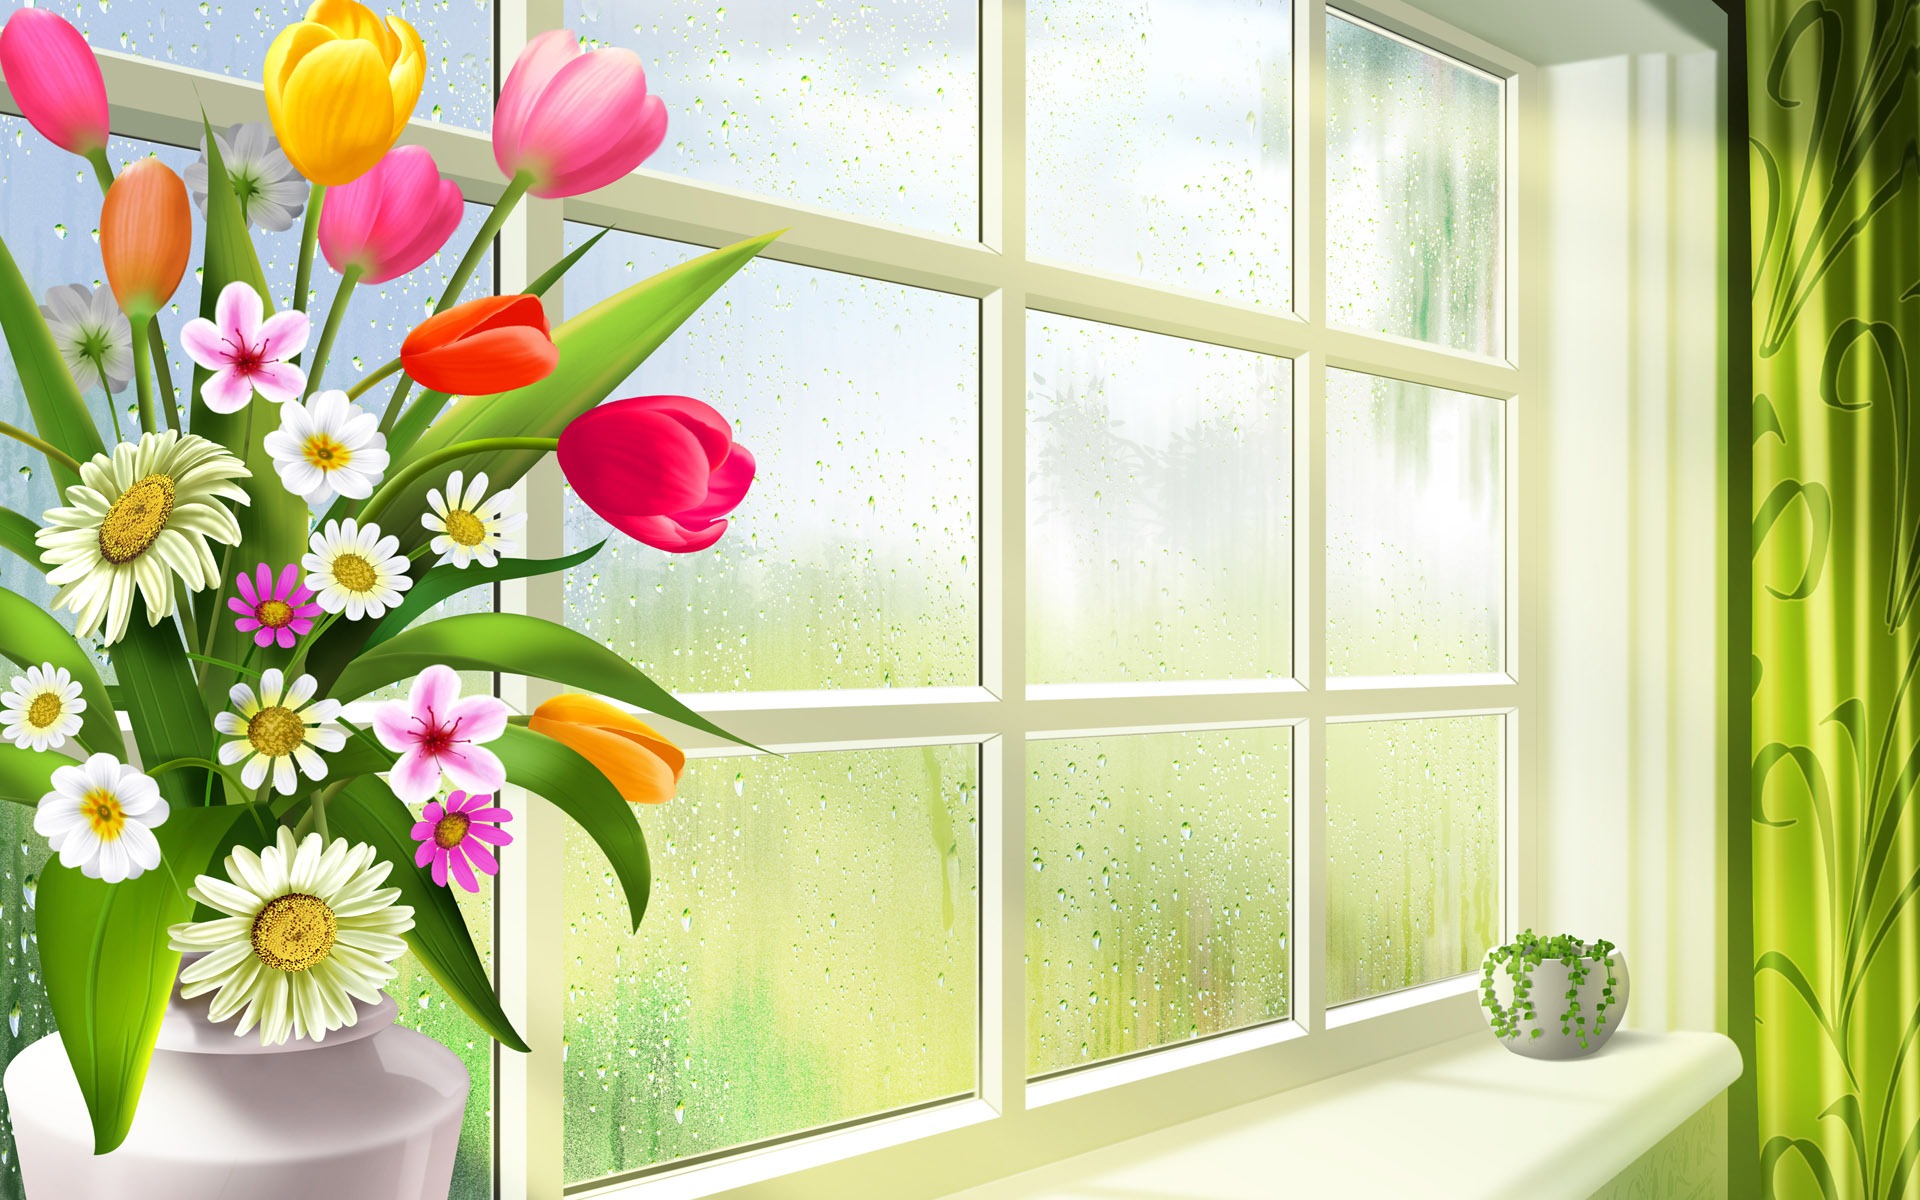 좋은 아침의 hd 벽지,꽃,창문,식물,벽,방